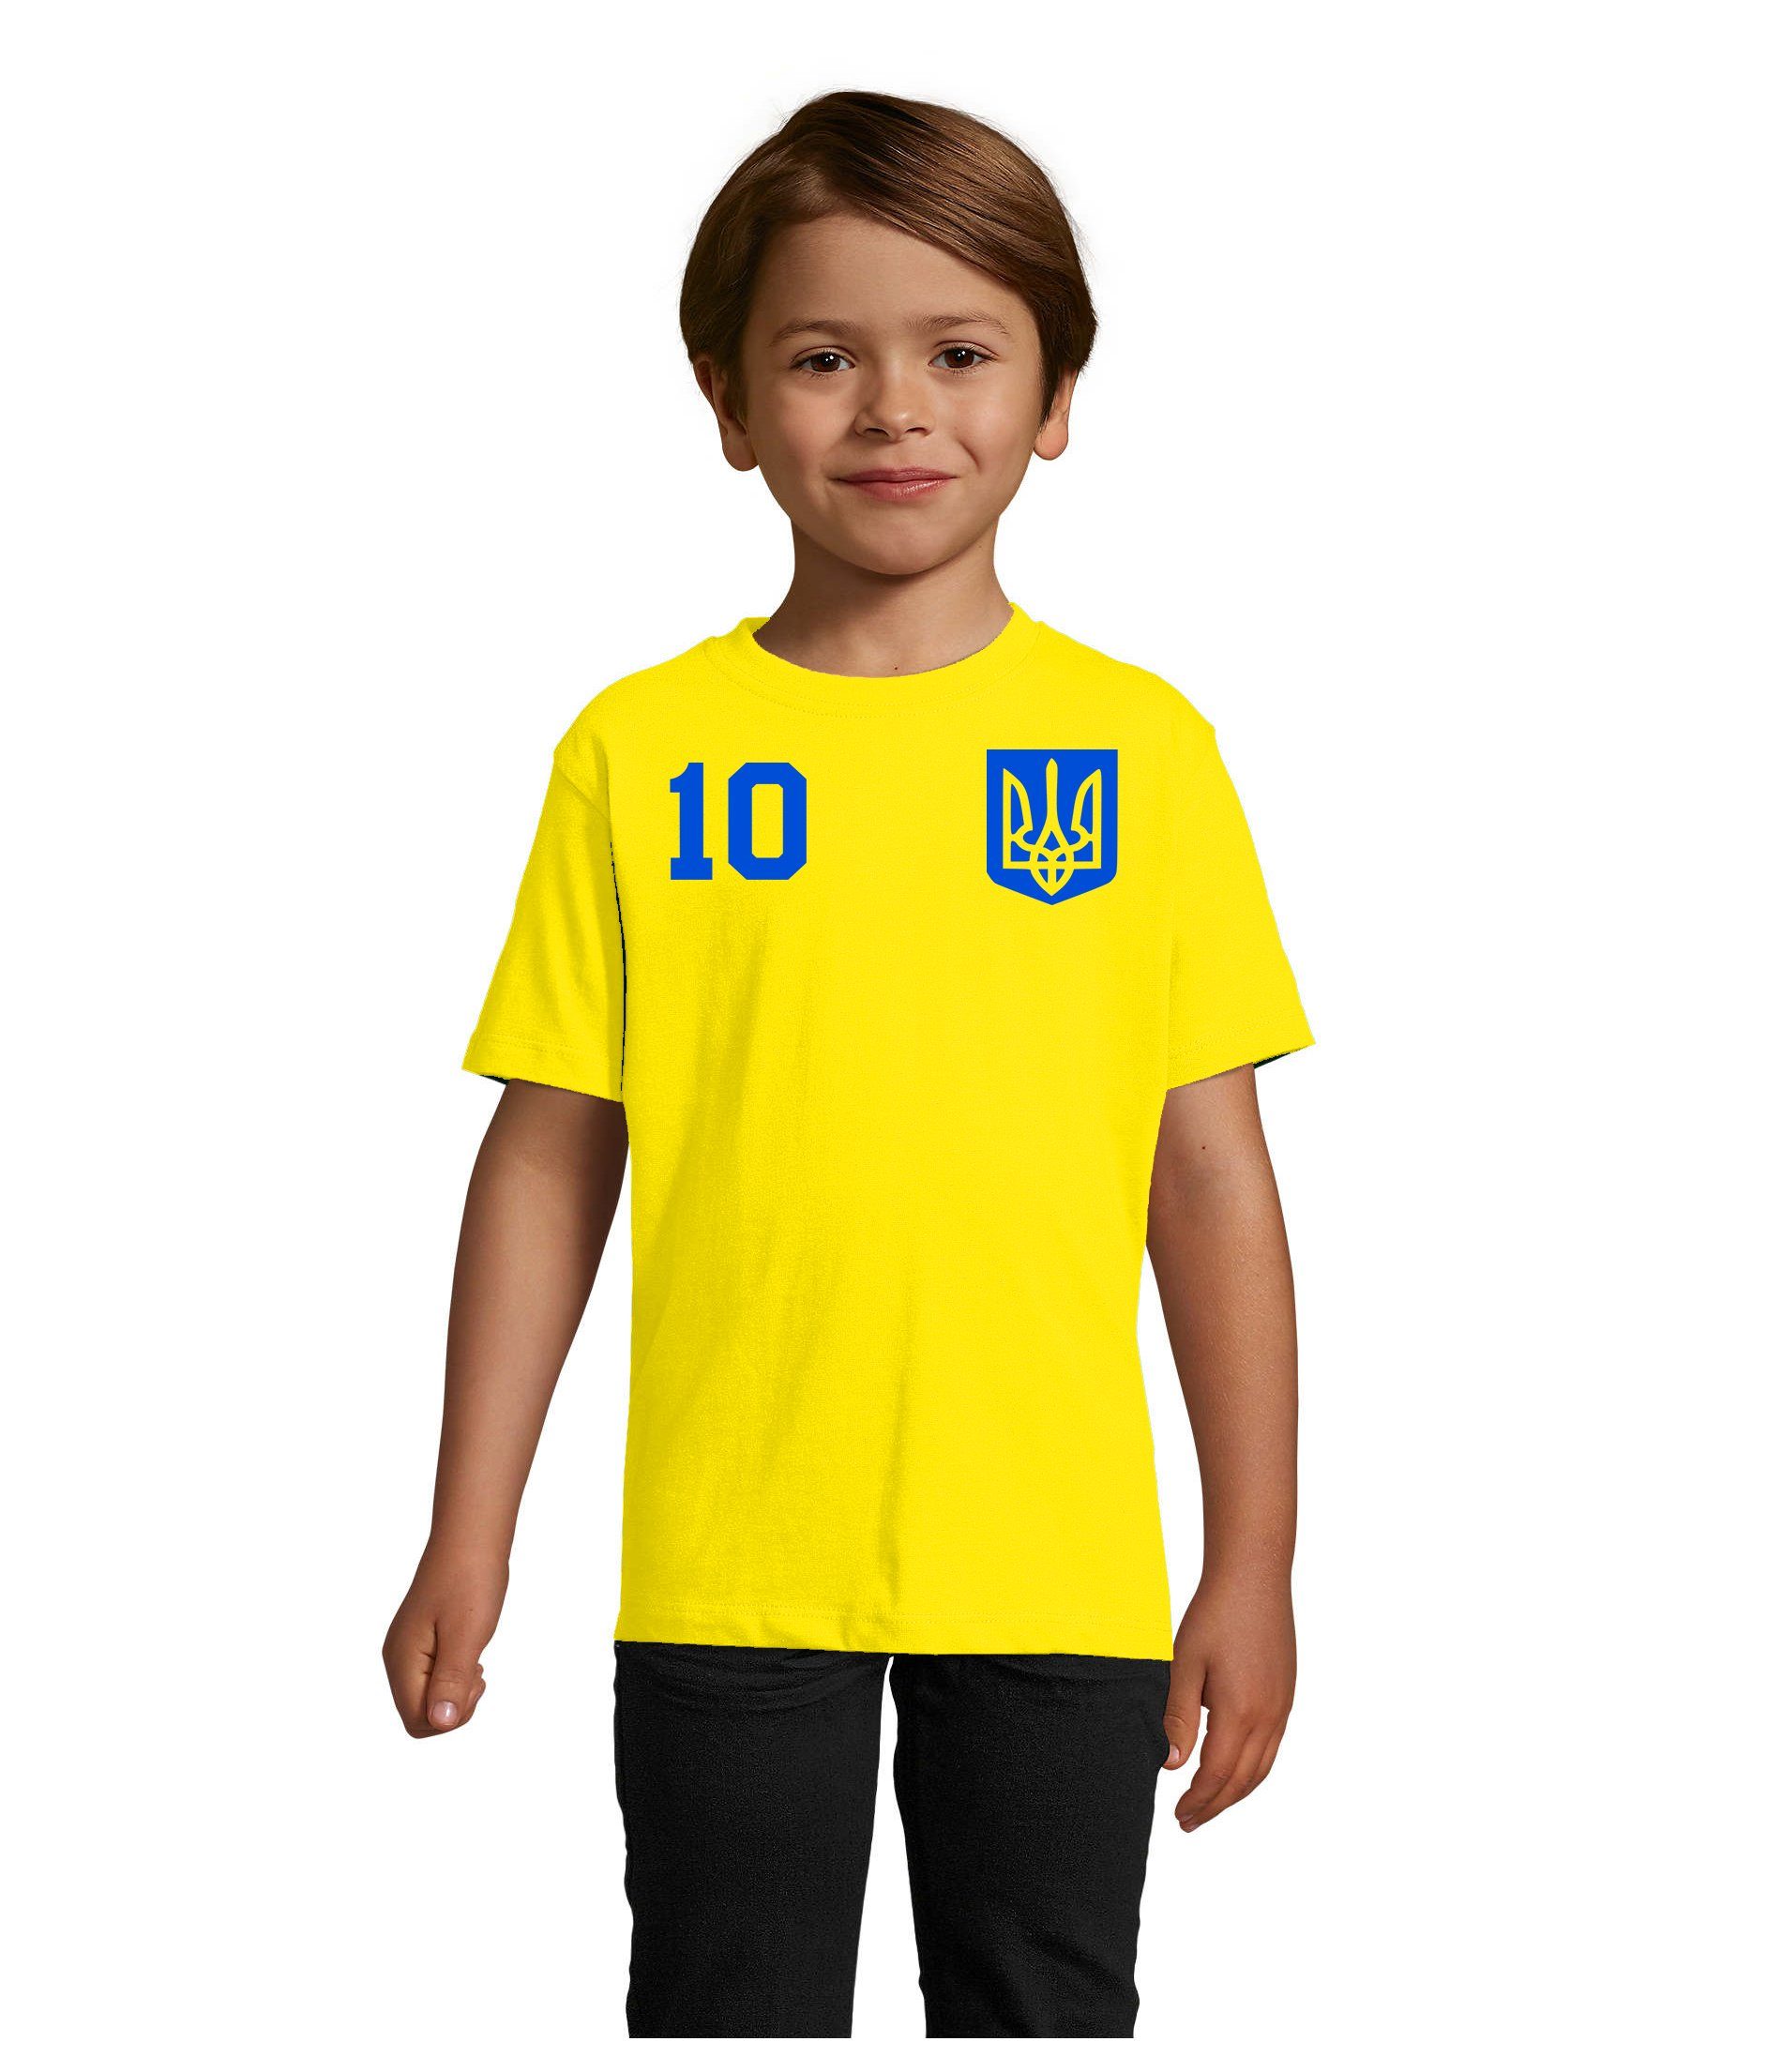 Europa Trikot EM Blondie WM Ukraine Sport Ukraina & Meister T-Shirt Brownie Fußball Kinder